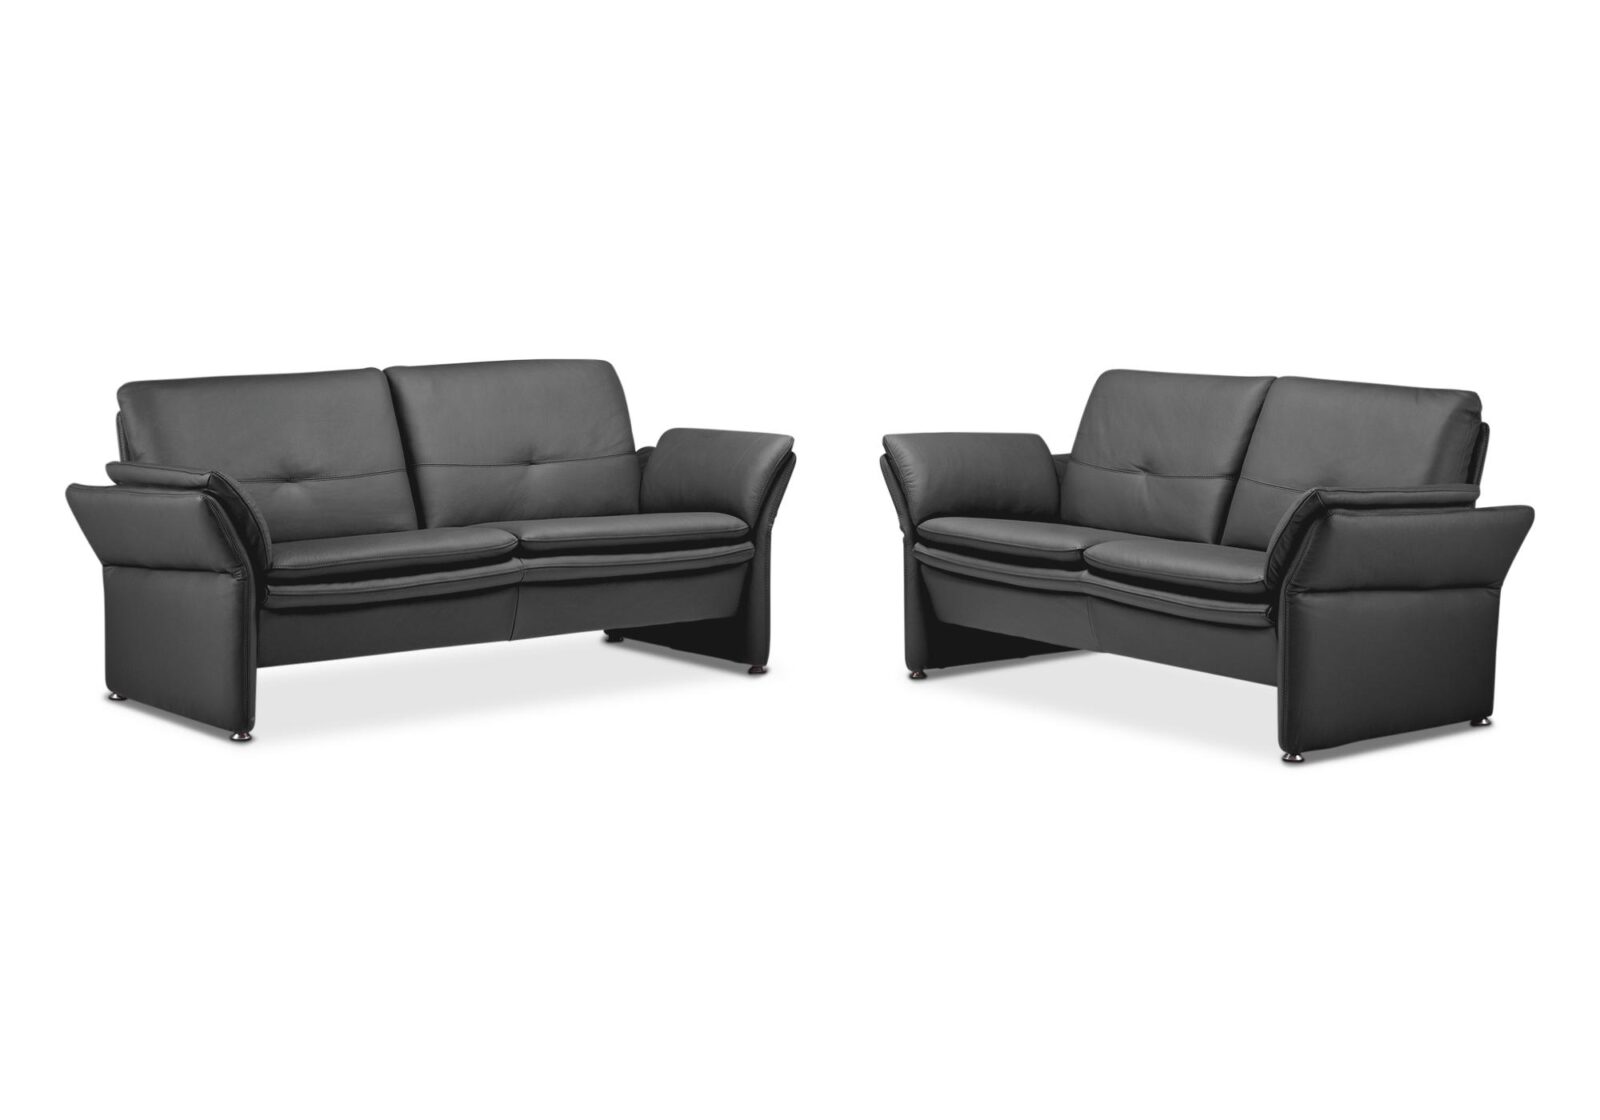 Polstergruppe Florenz  2er und 2.5er Sofa. Bezug : Leder. Farbe: Schwarz. Erhältlich bei Möbel Gallati.